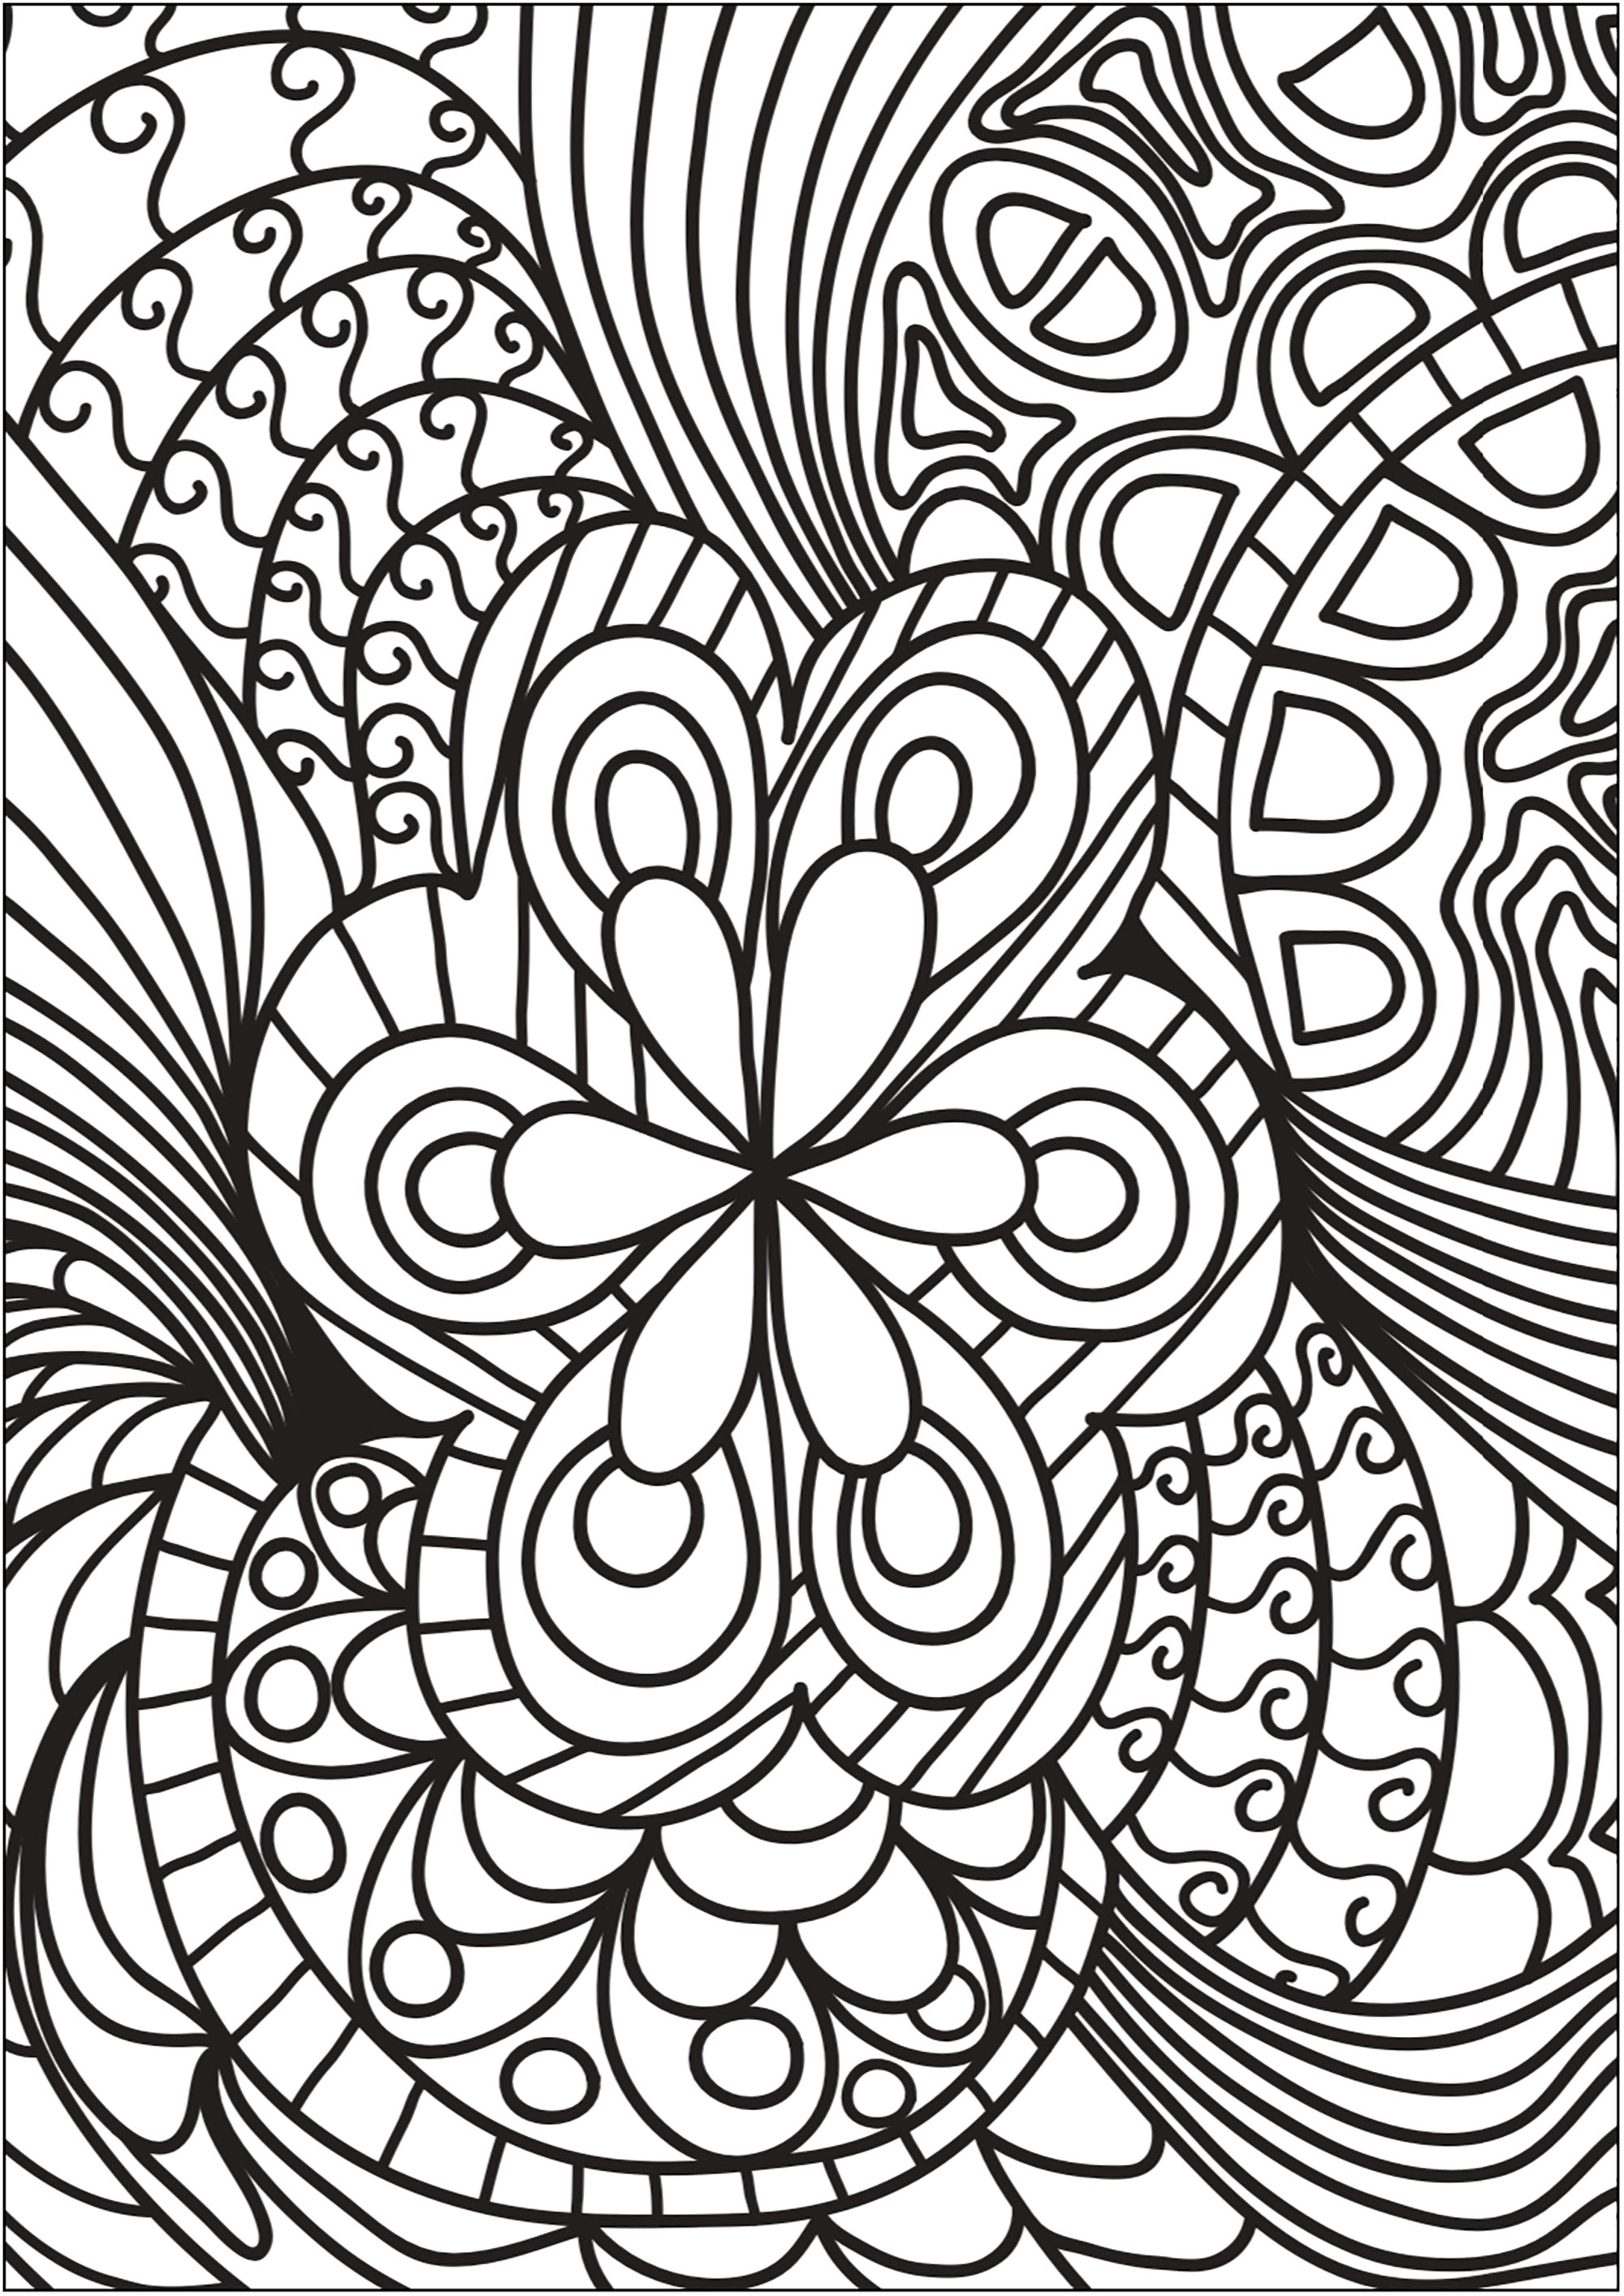 Schönes Doodle mit zentraler Blume und umliegenden Formen. Beginnen Sie mit dem Ausmalen der Blume und lassen Sie sich dann von einem Wirbelwind aus Formen und Farben mitreißen.